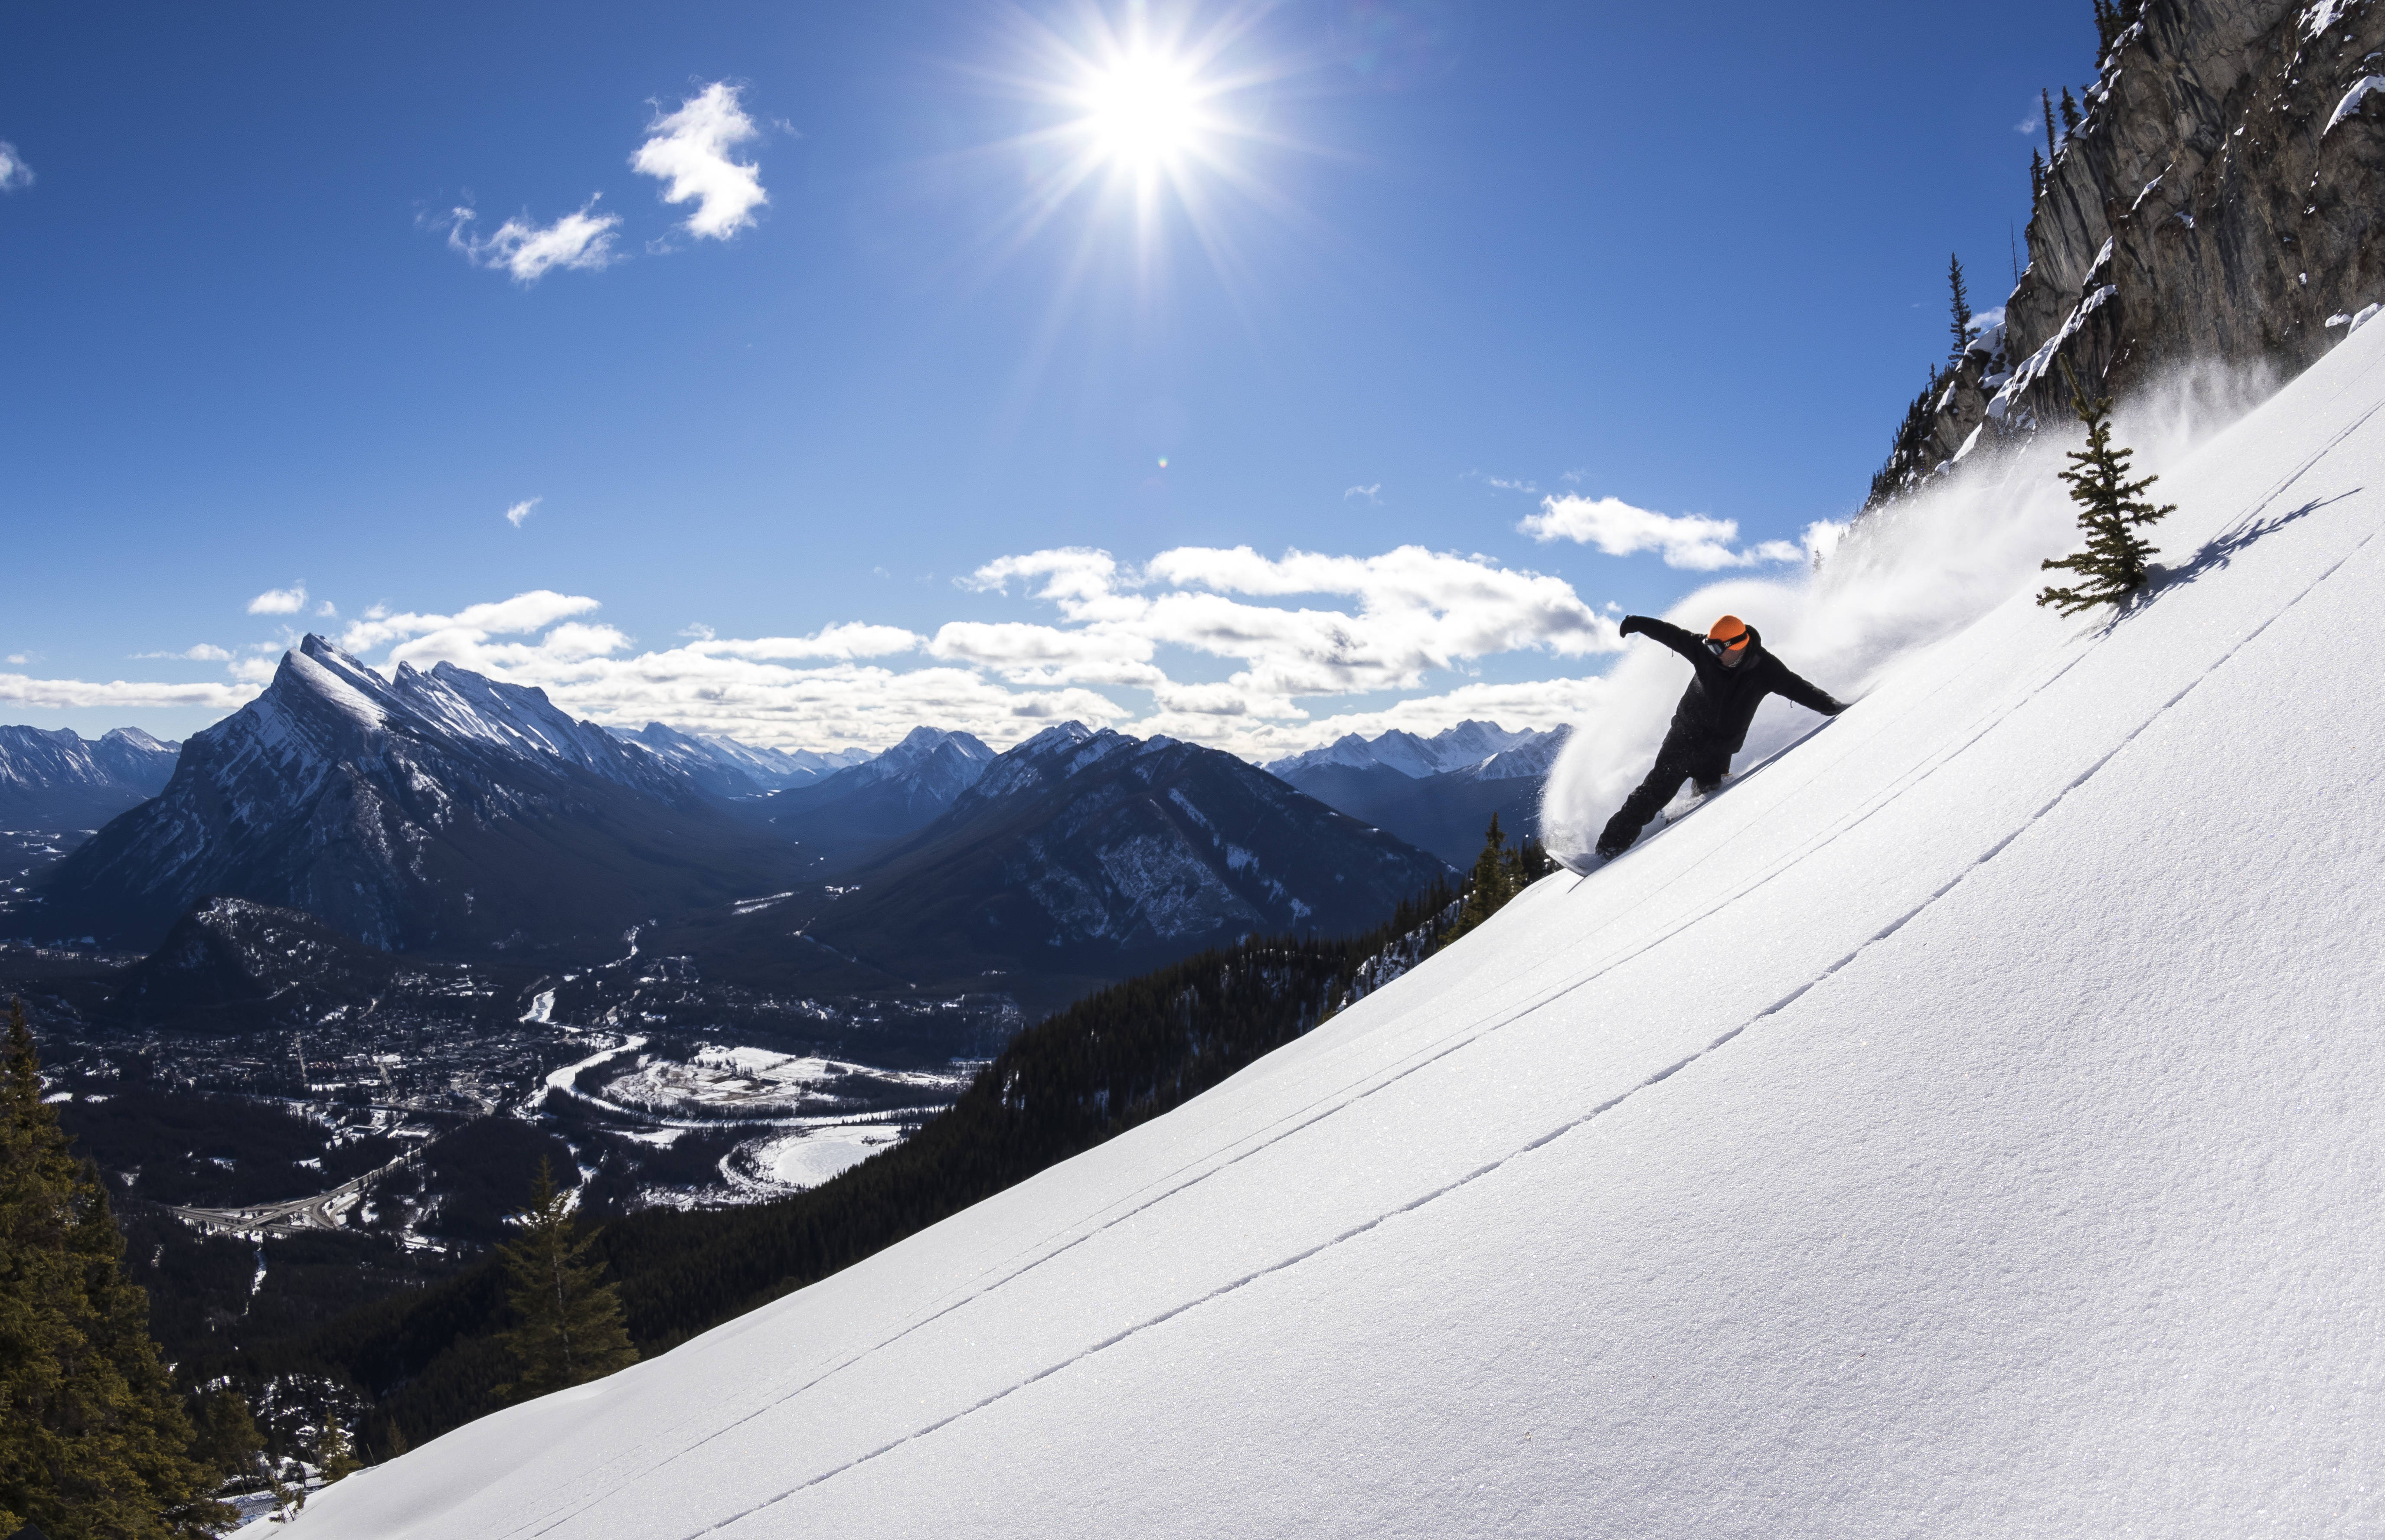 加拿大冬季旅游和冰雪体验地_滑雪_度假村_冬奥会